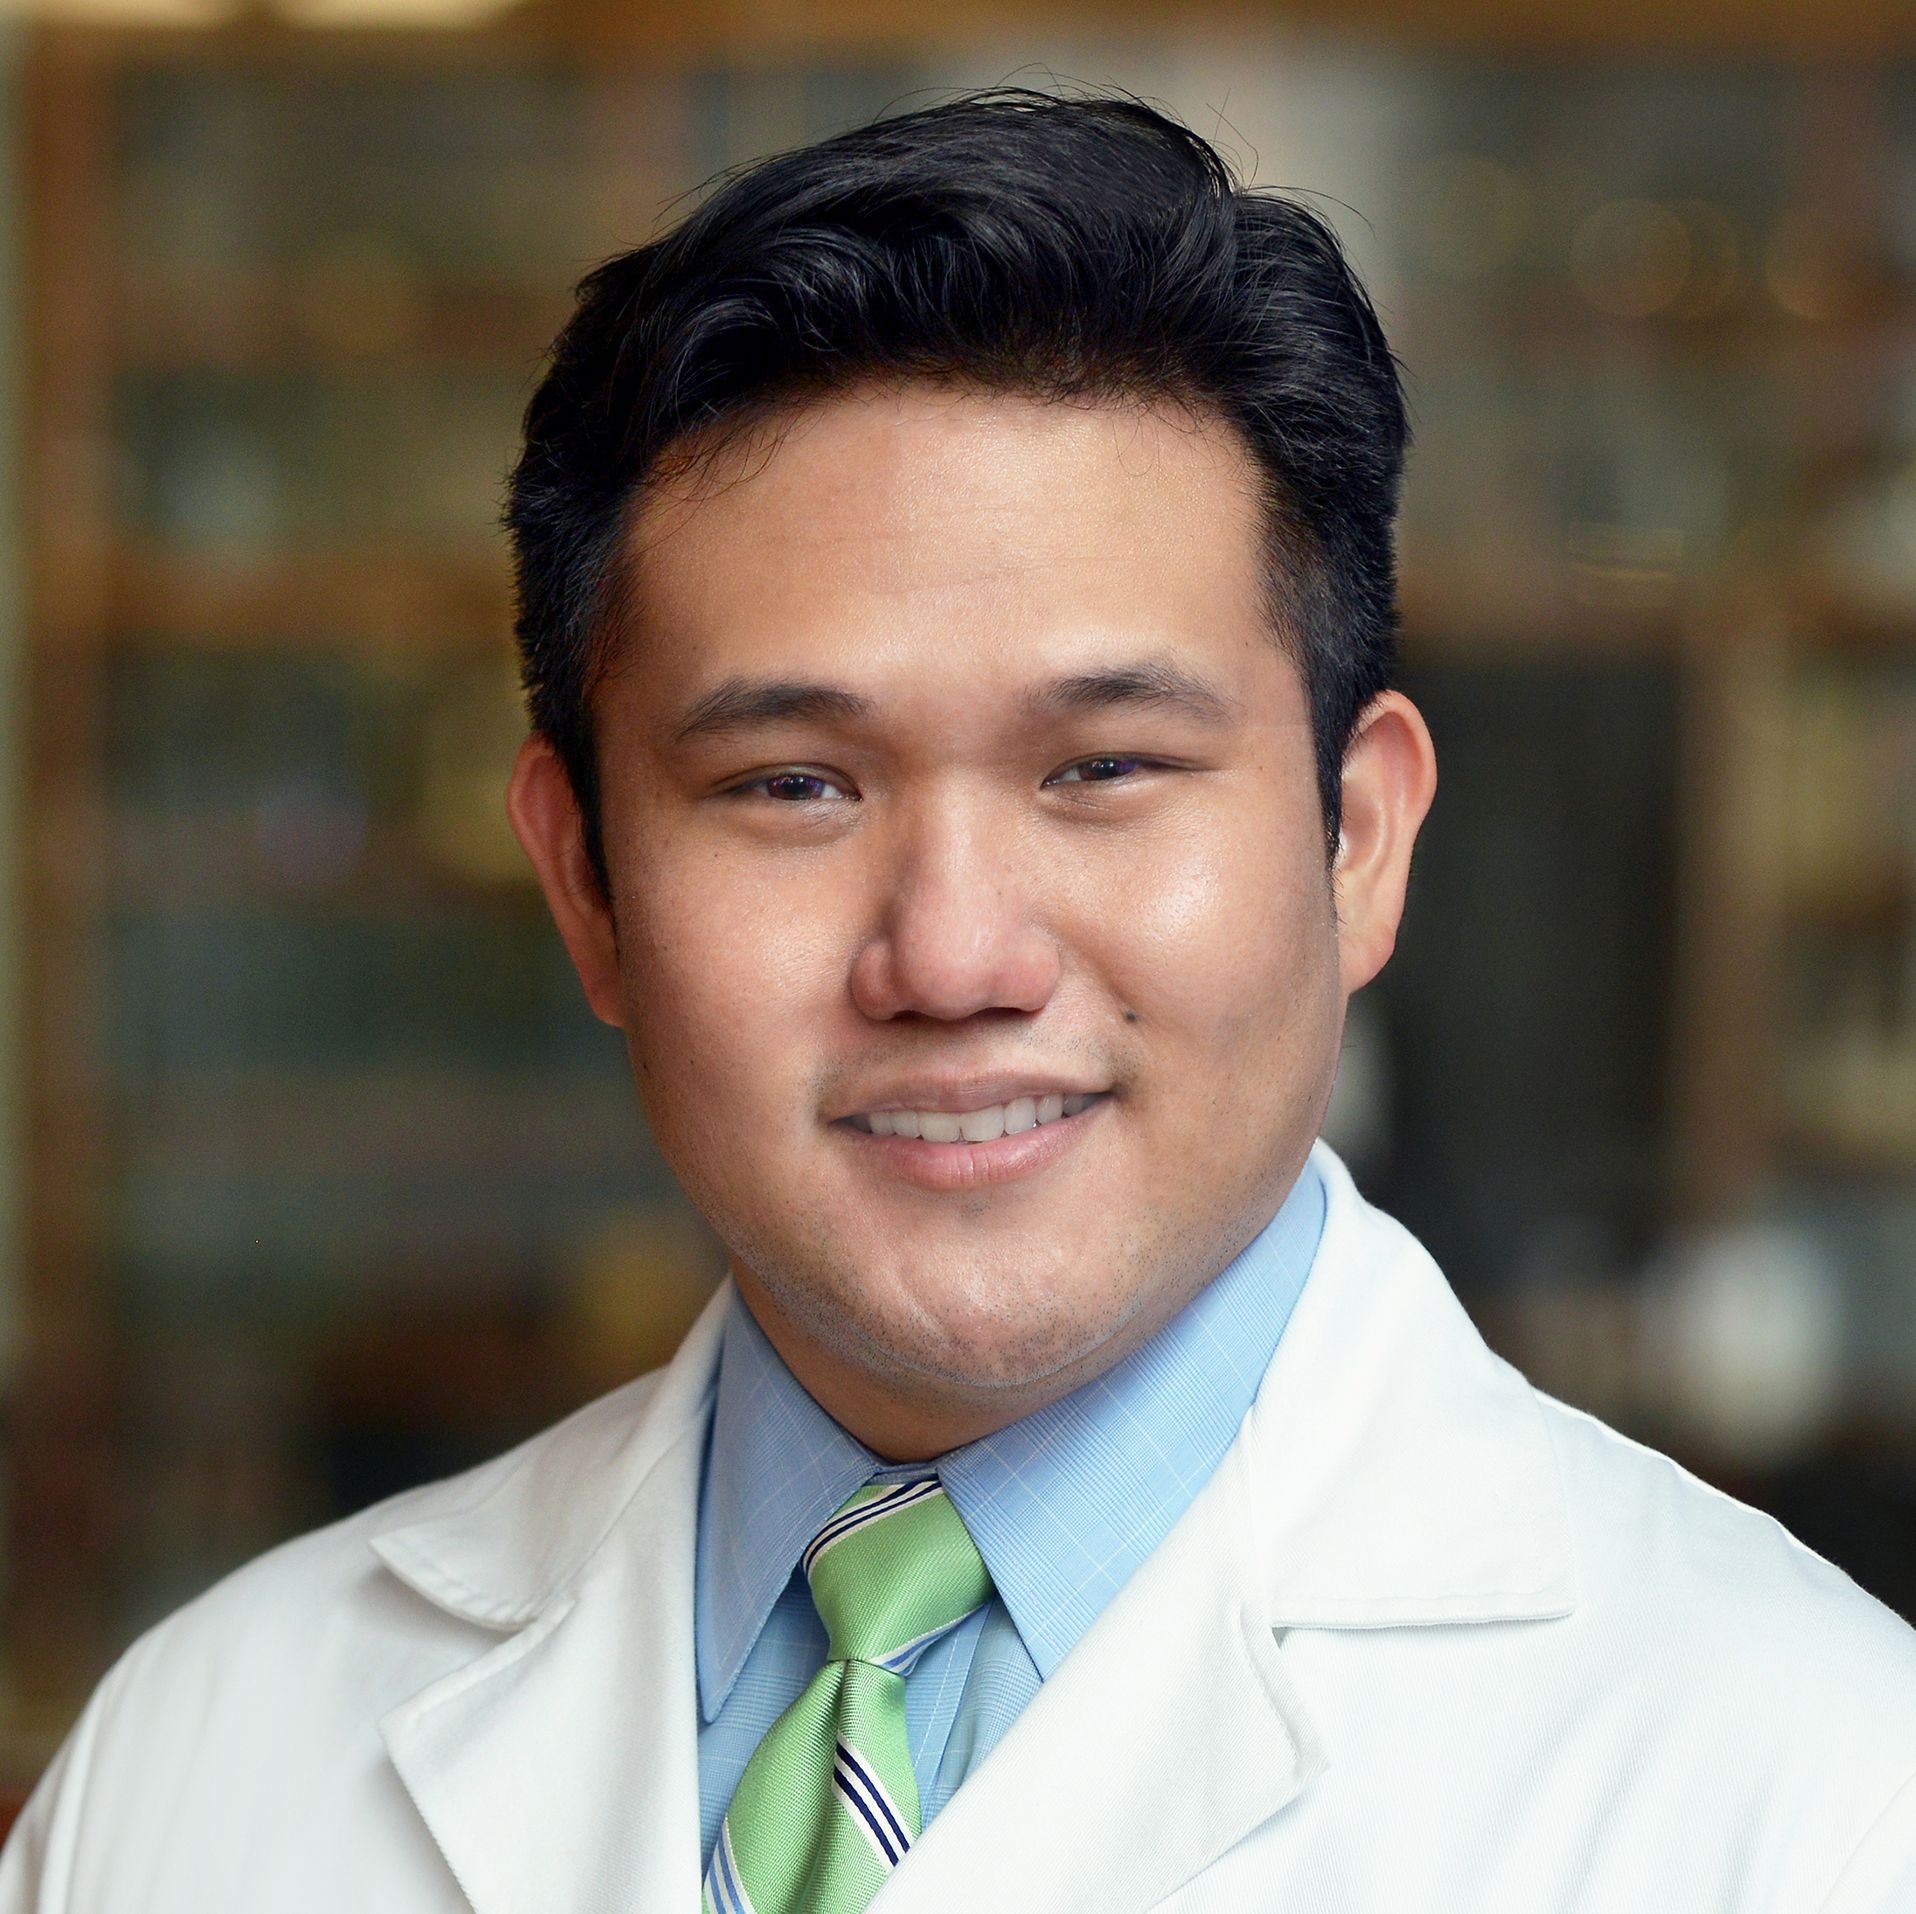 Dr. N. Eddie Liou, assistant professor of otolaryngology at Baylor College of Medicine.